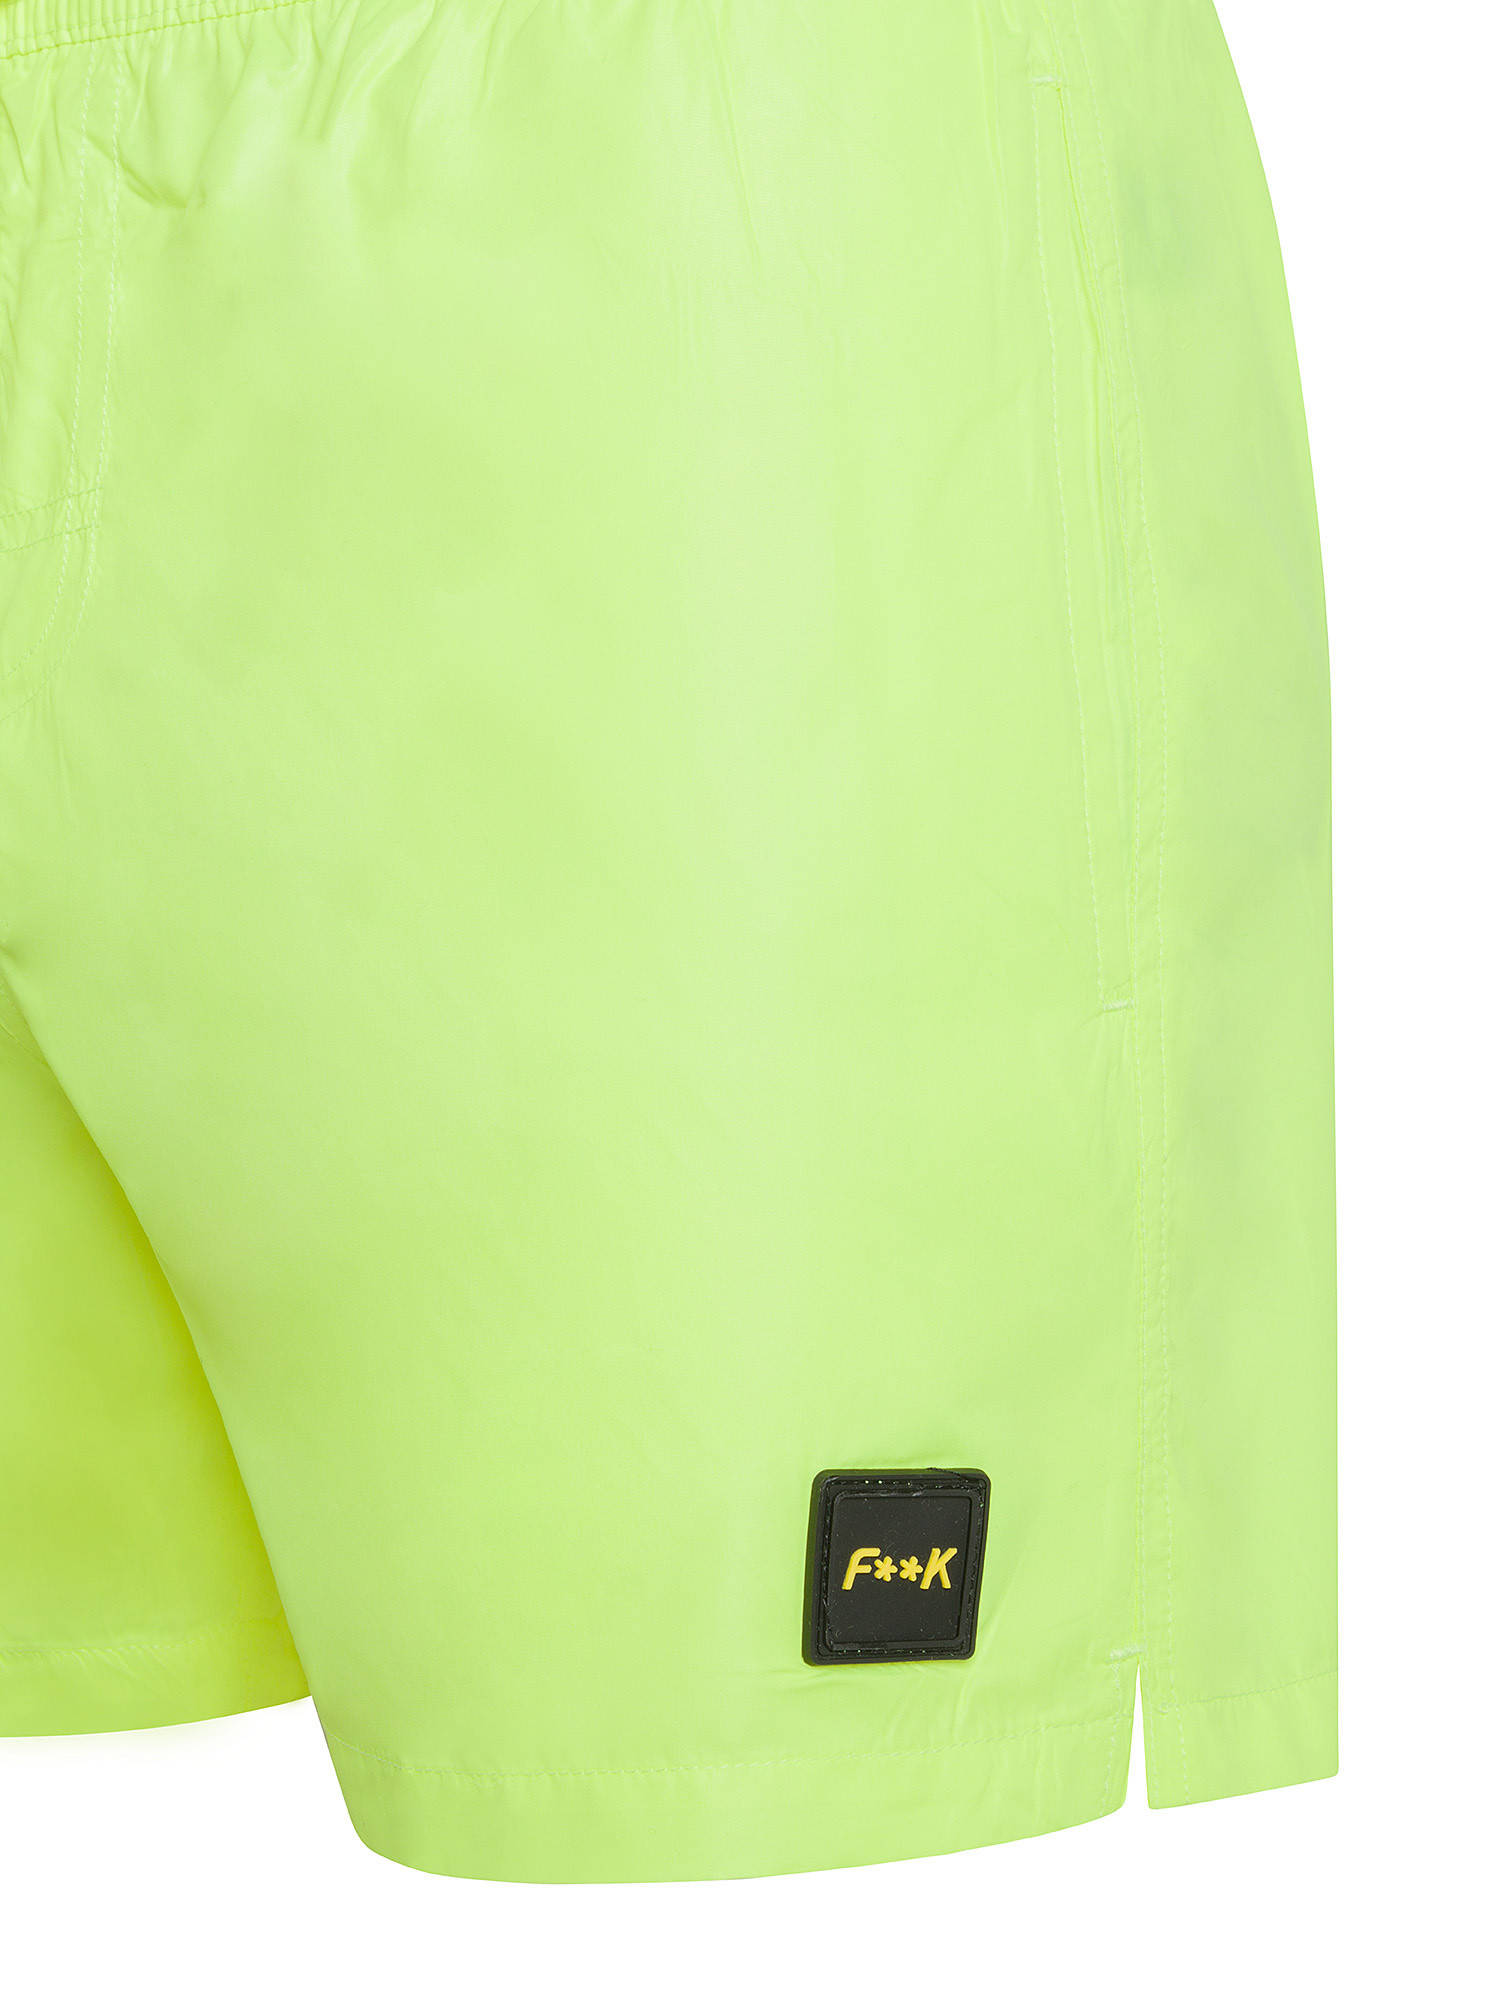 F**K - Shiny swim shorts, Lime Green, large image number 2